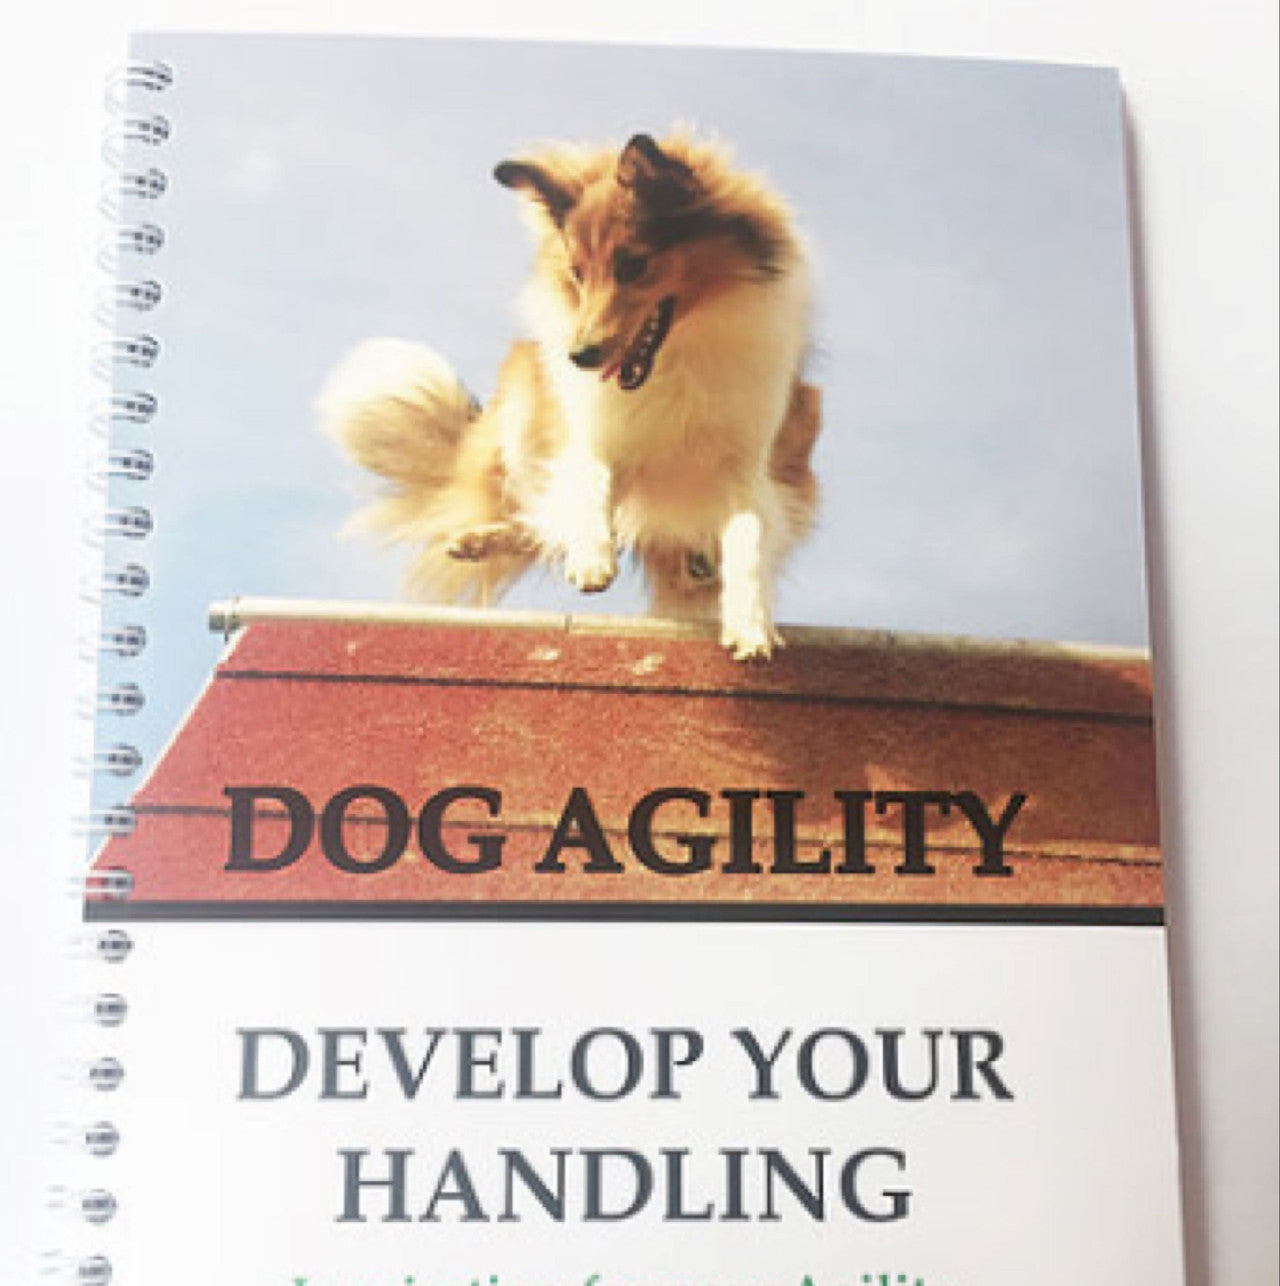 BOG: Develop your handling